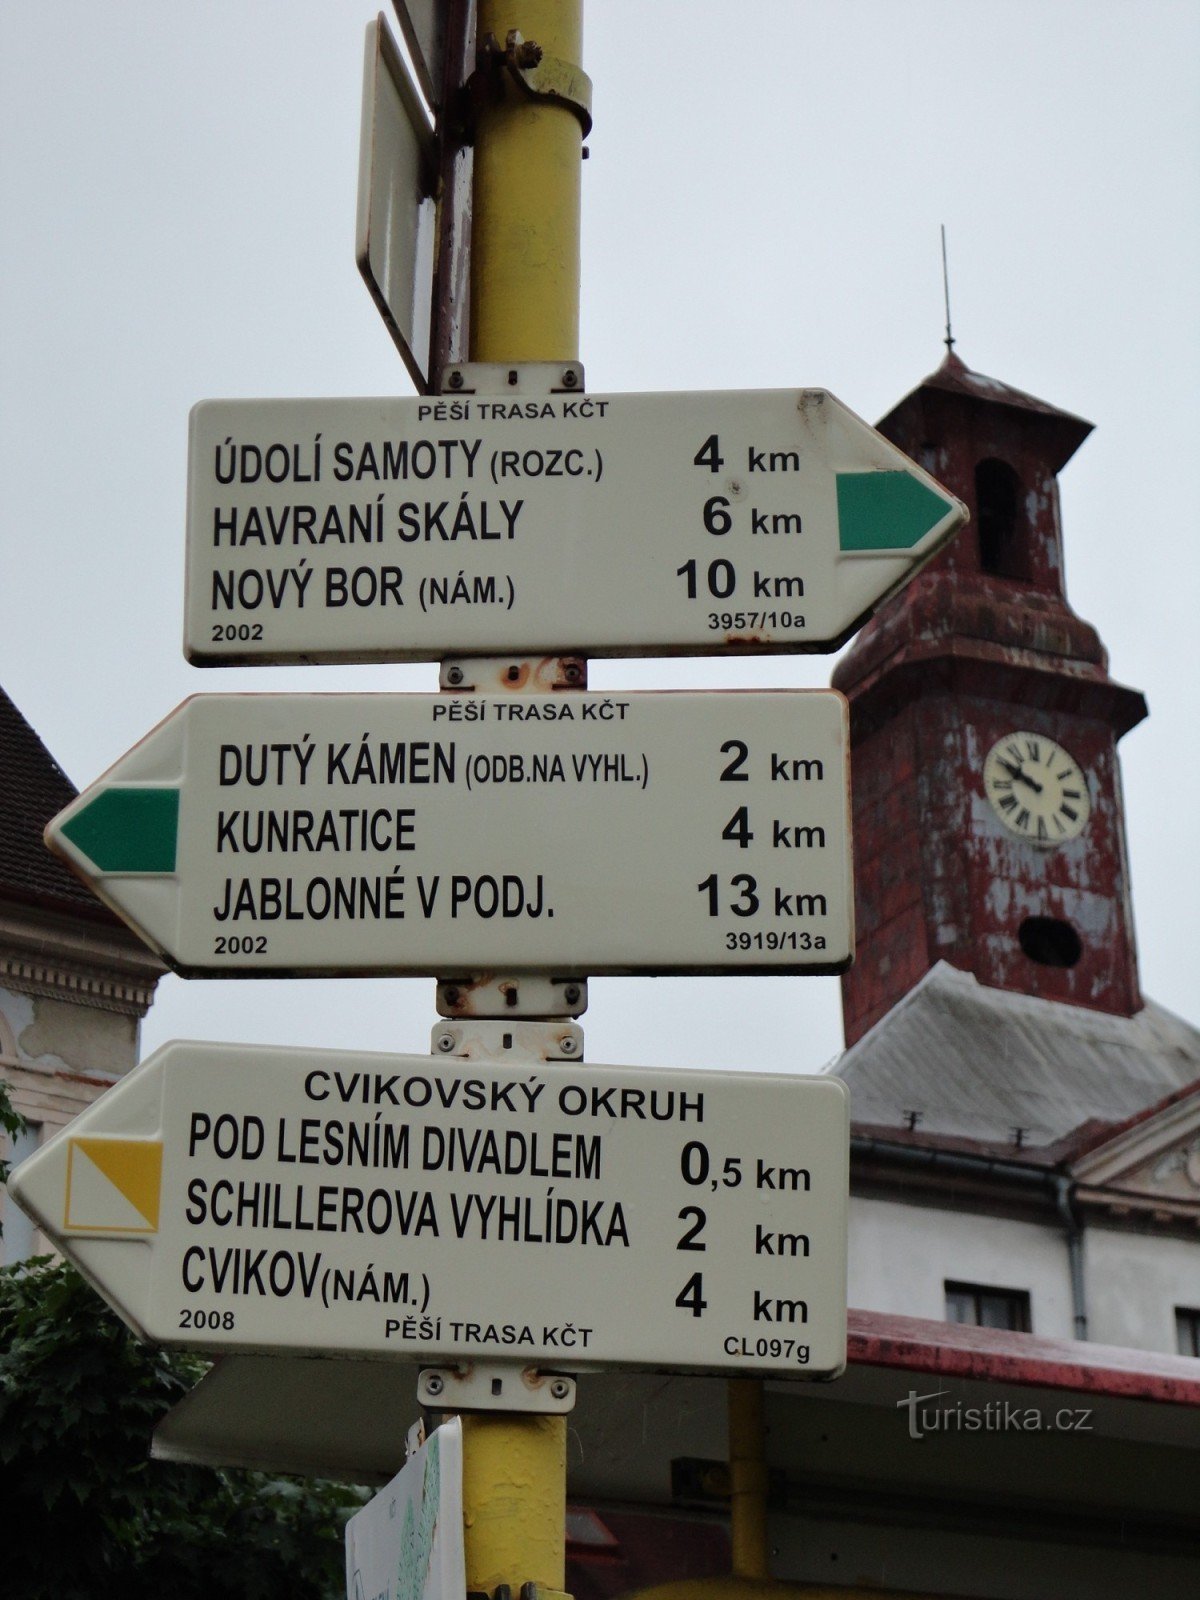 encrucijada turística Cvikov - náměstí